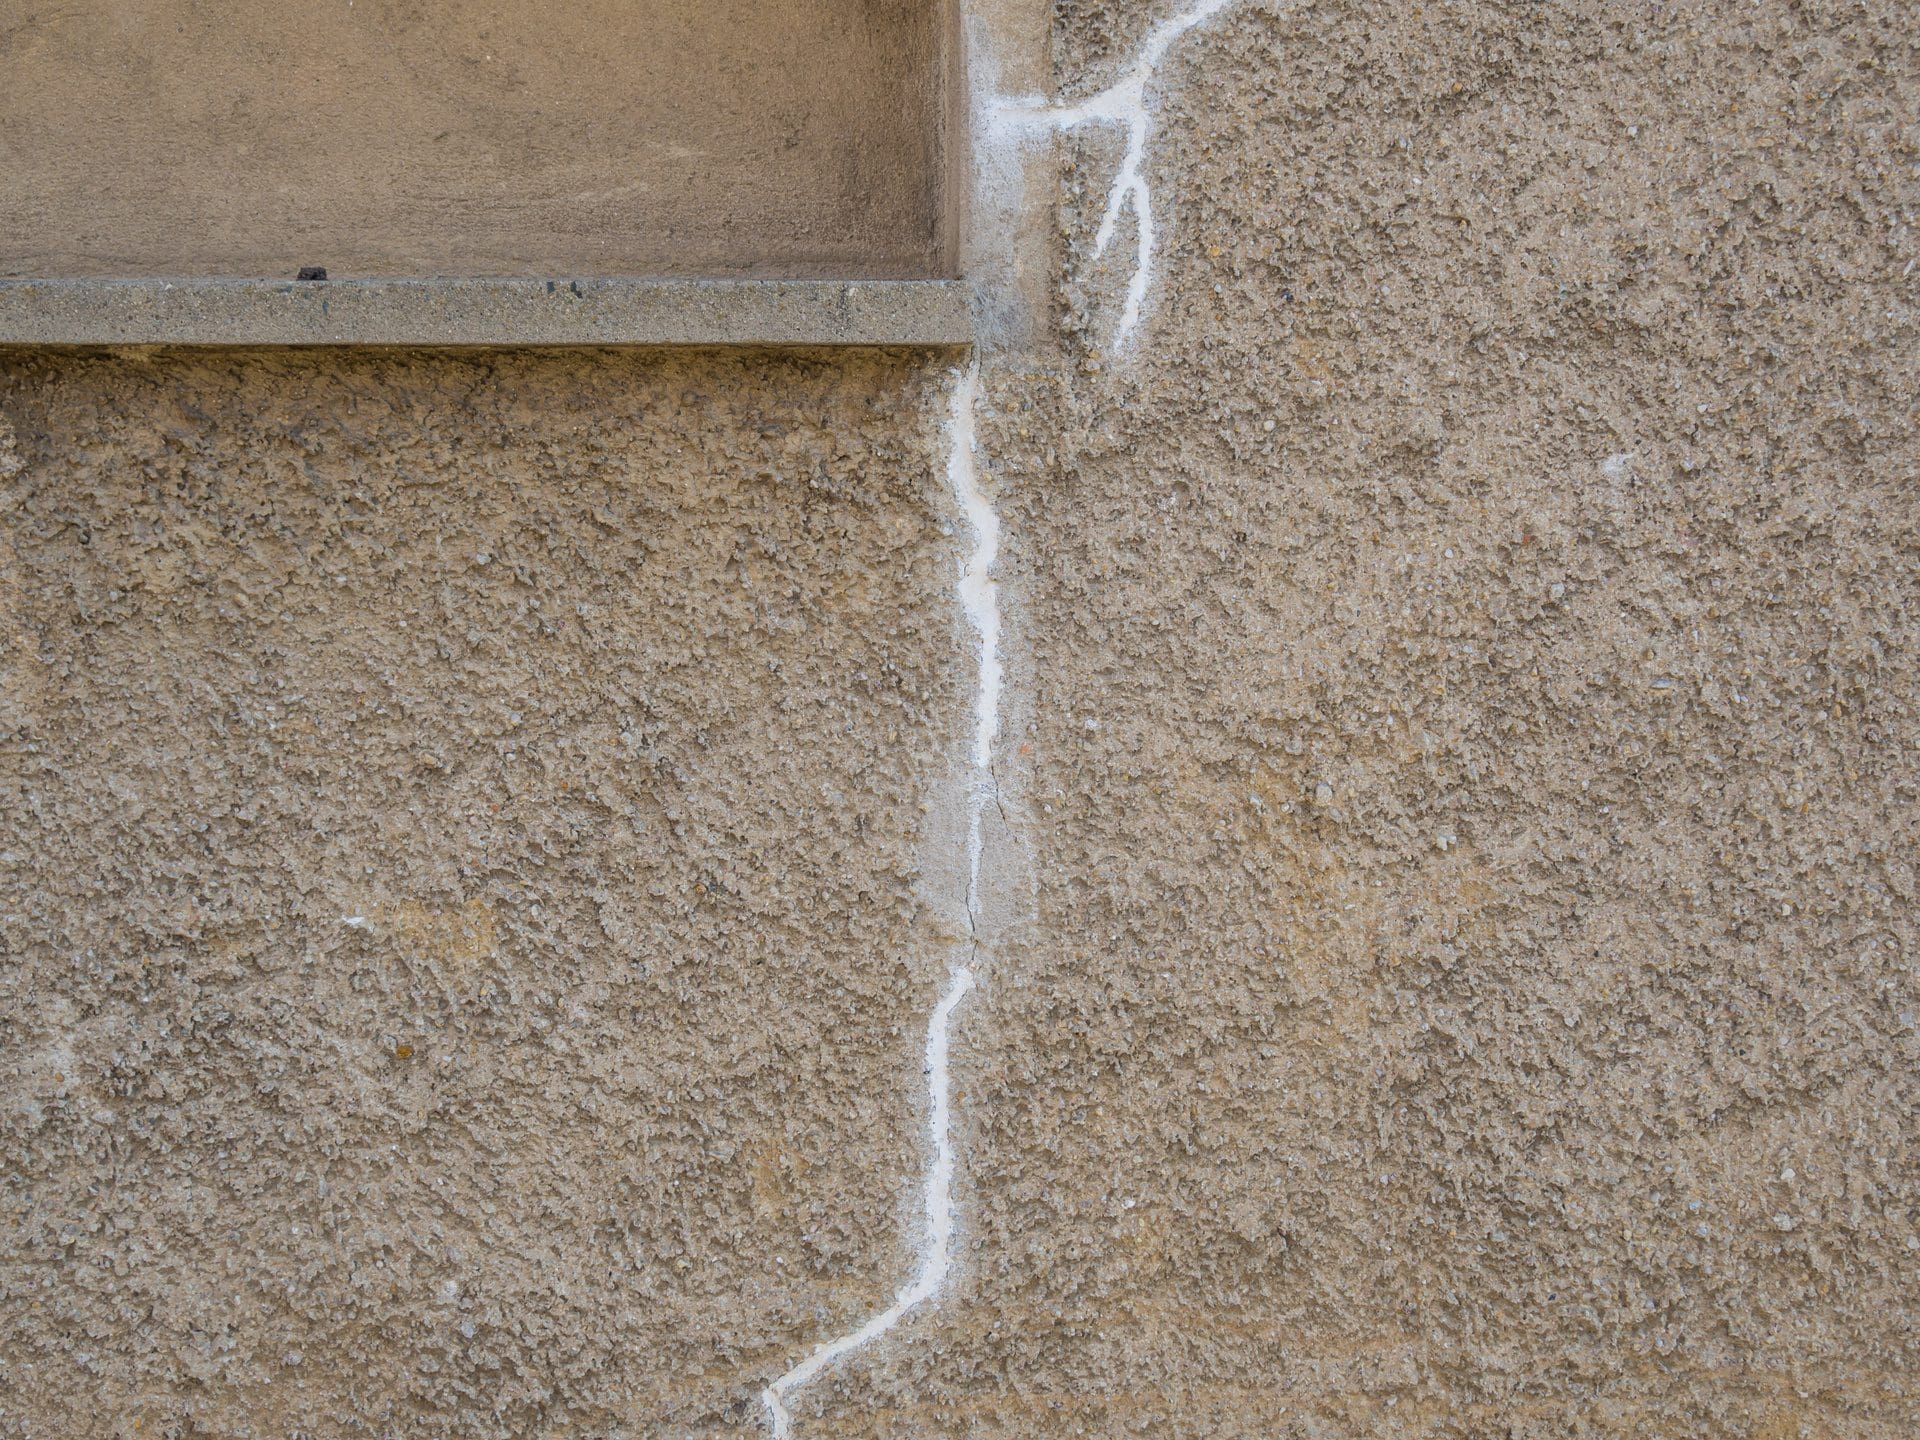 Risse in der Wand außen - nach dem Ausbessern (© Animaflora PicsStock / stock.adobe.com)